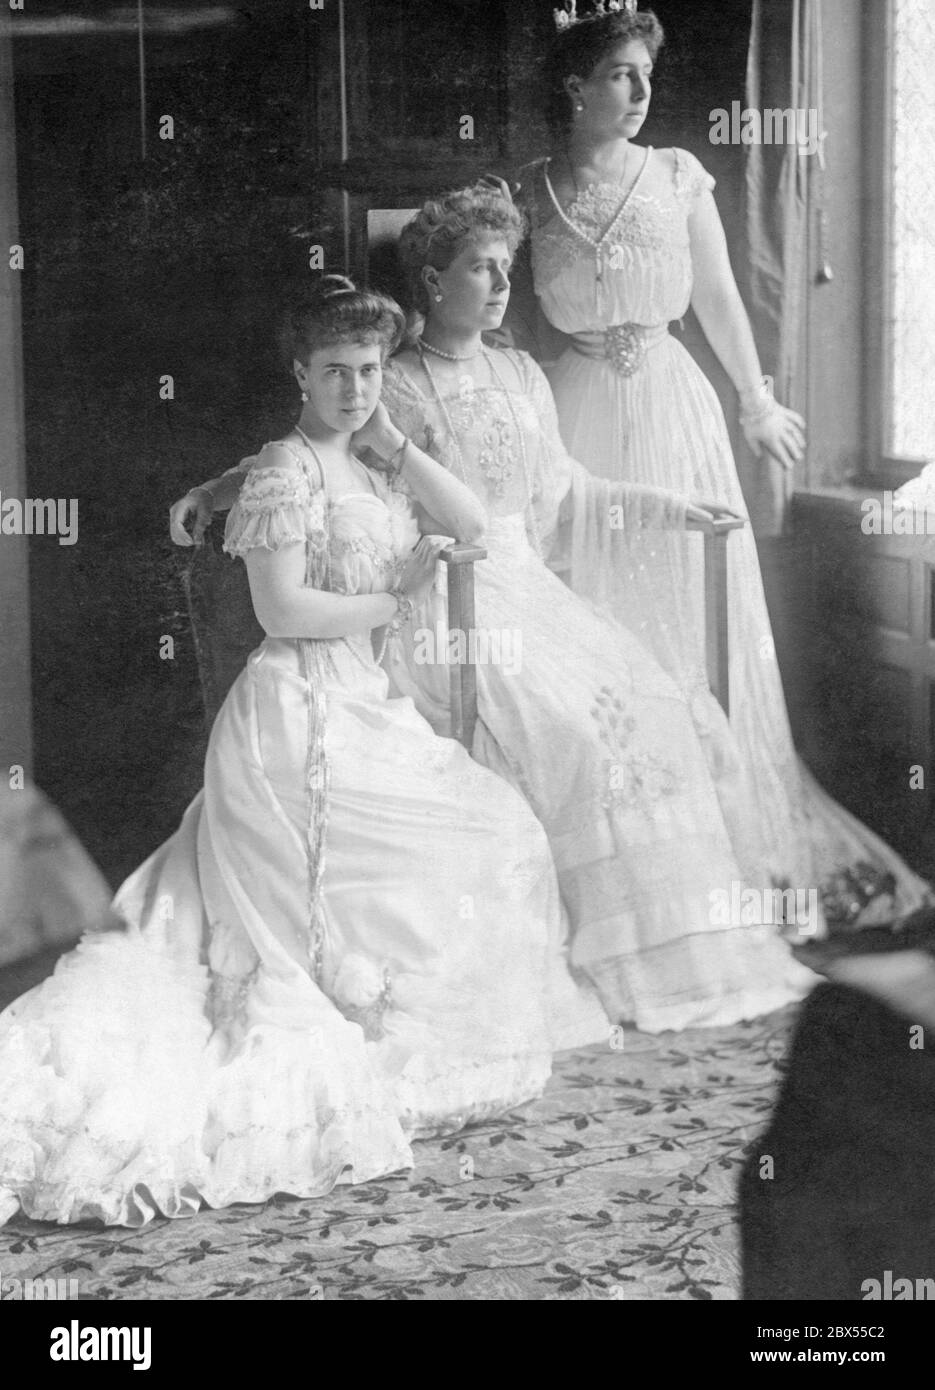 De izquierda a derecha: Princesa Beatrice, princesa María de la Corona de Rumania y Gran Duquesa Cyril. Foto sin fecha. Foto de stock